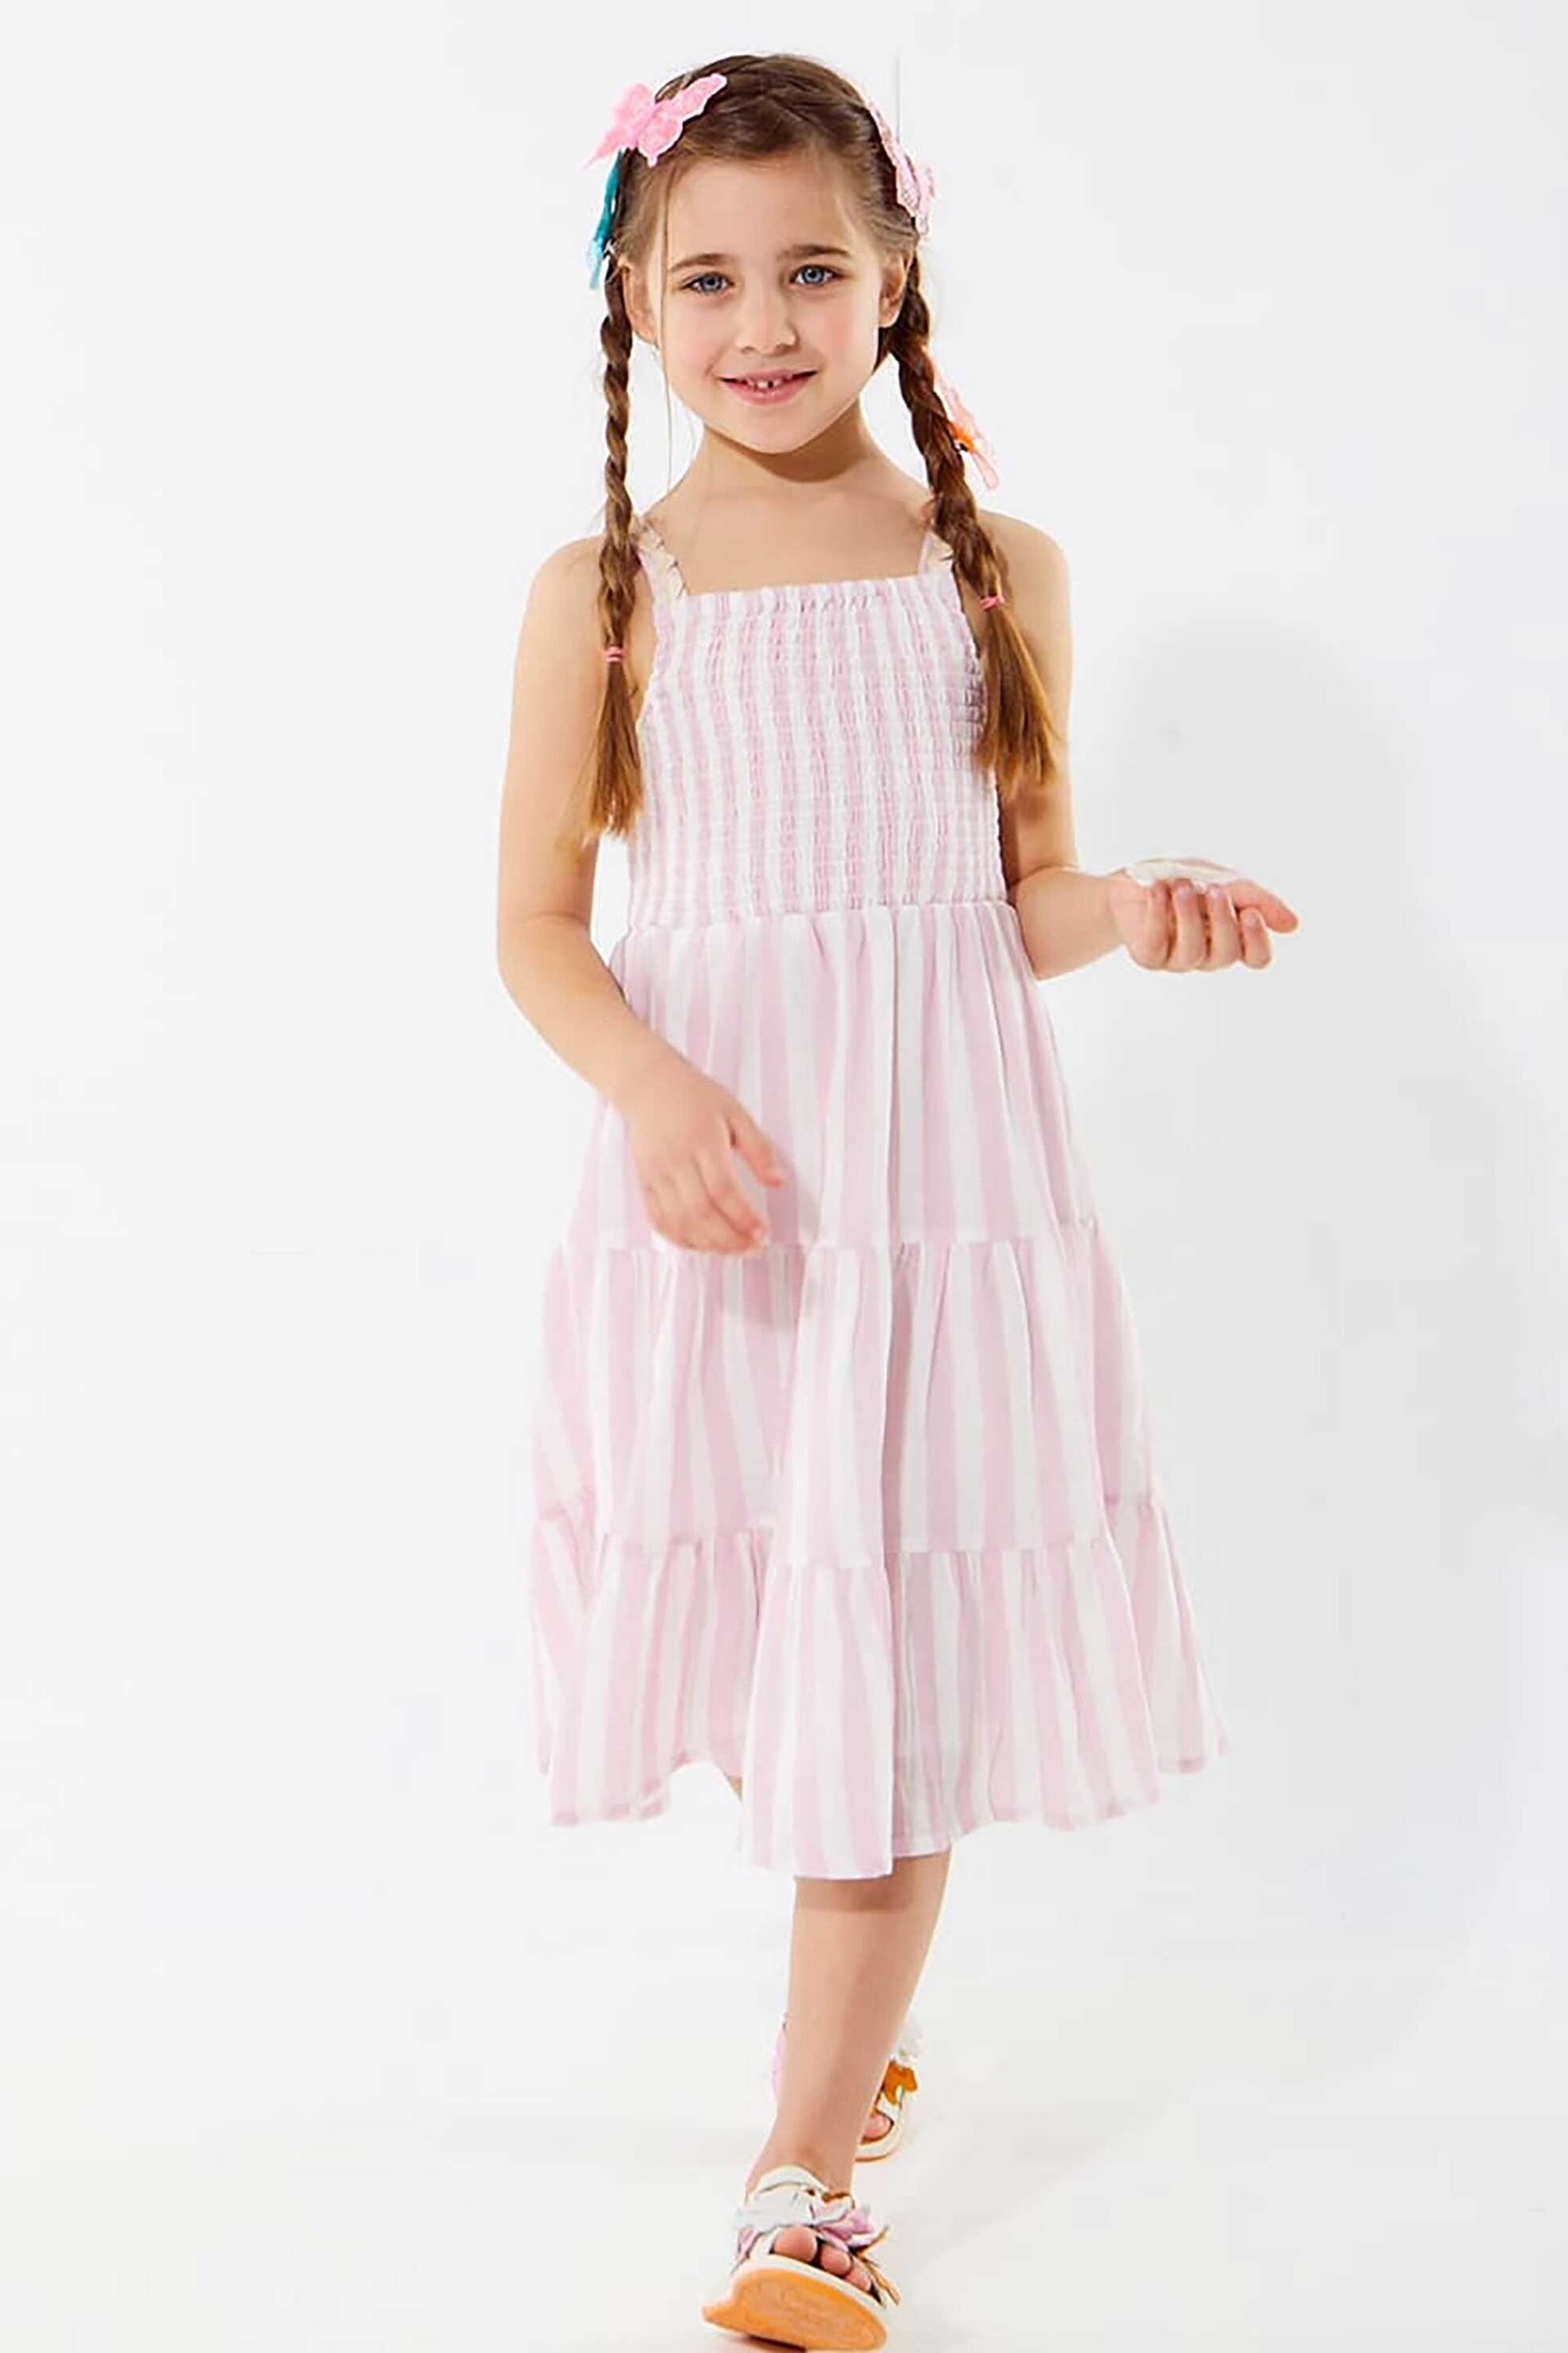 Παιδικά Ρούχα, Παπούτσια & Παιχνίδια > Παιδικά Ρούχα & Αξεσουάρ για Κορίτσια > Παιδικά Φορέματα για Κορίτσια Alouette παιδικό φόρεμα ριγέ με κοψίματα και κυματιστό τελείωμα - 00942093 Ροζ